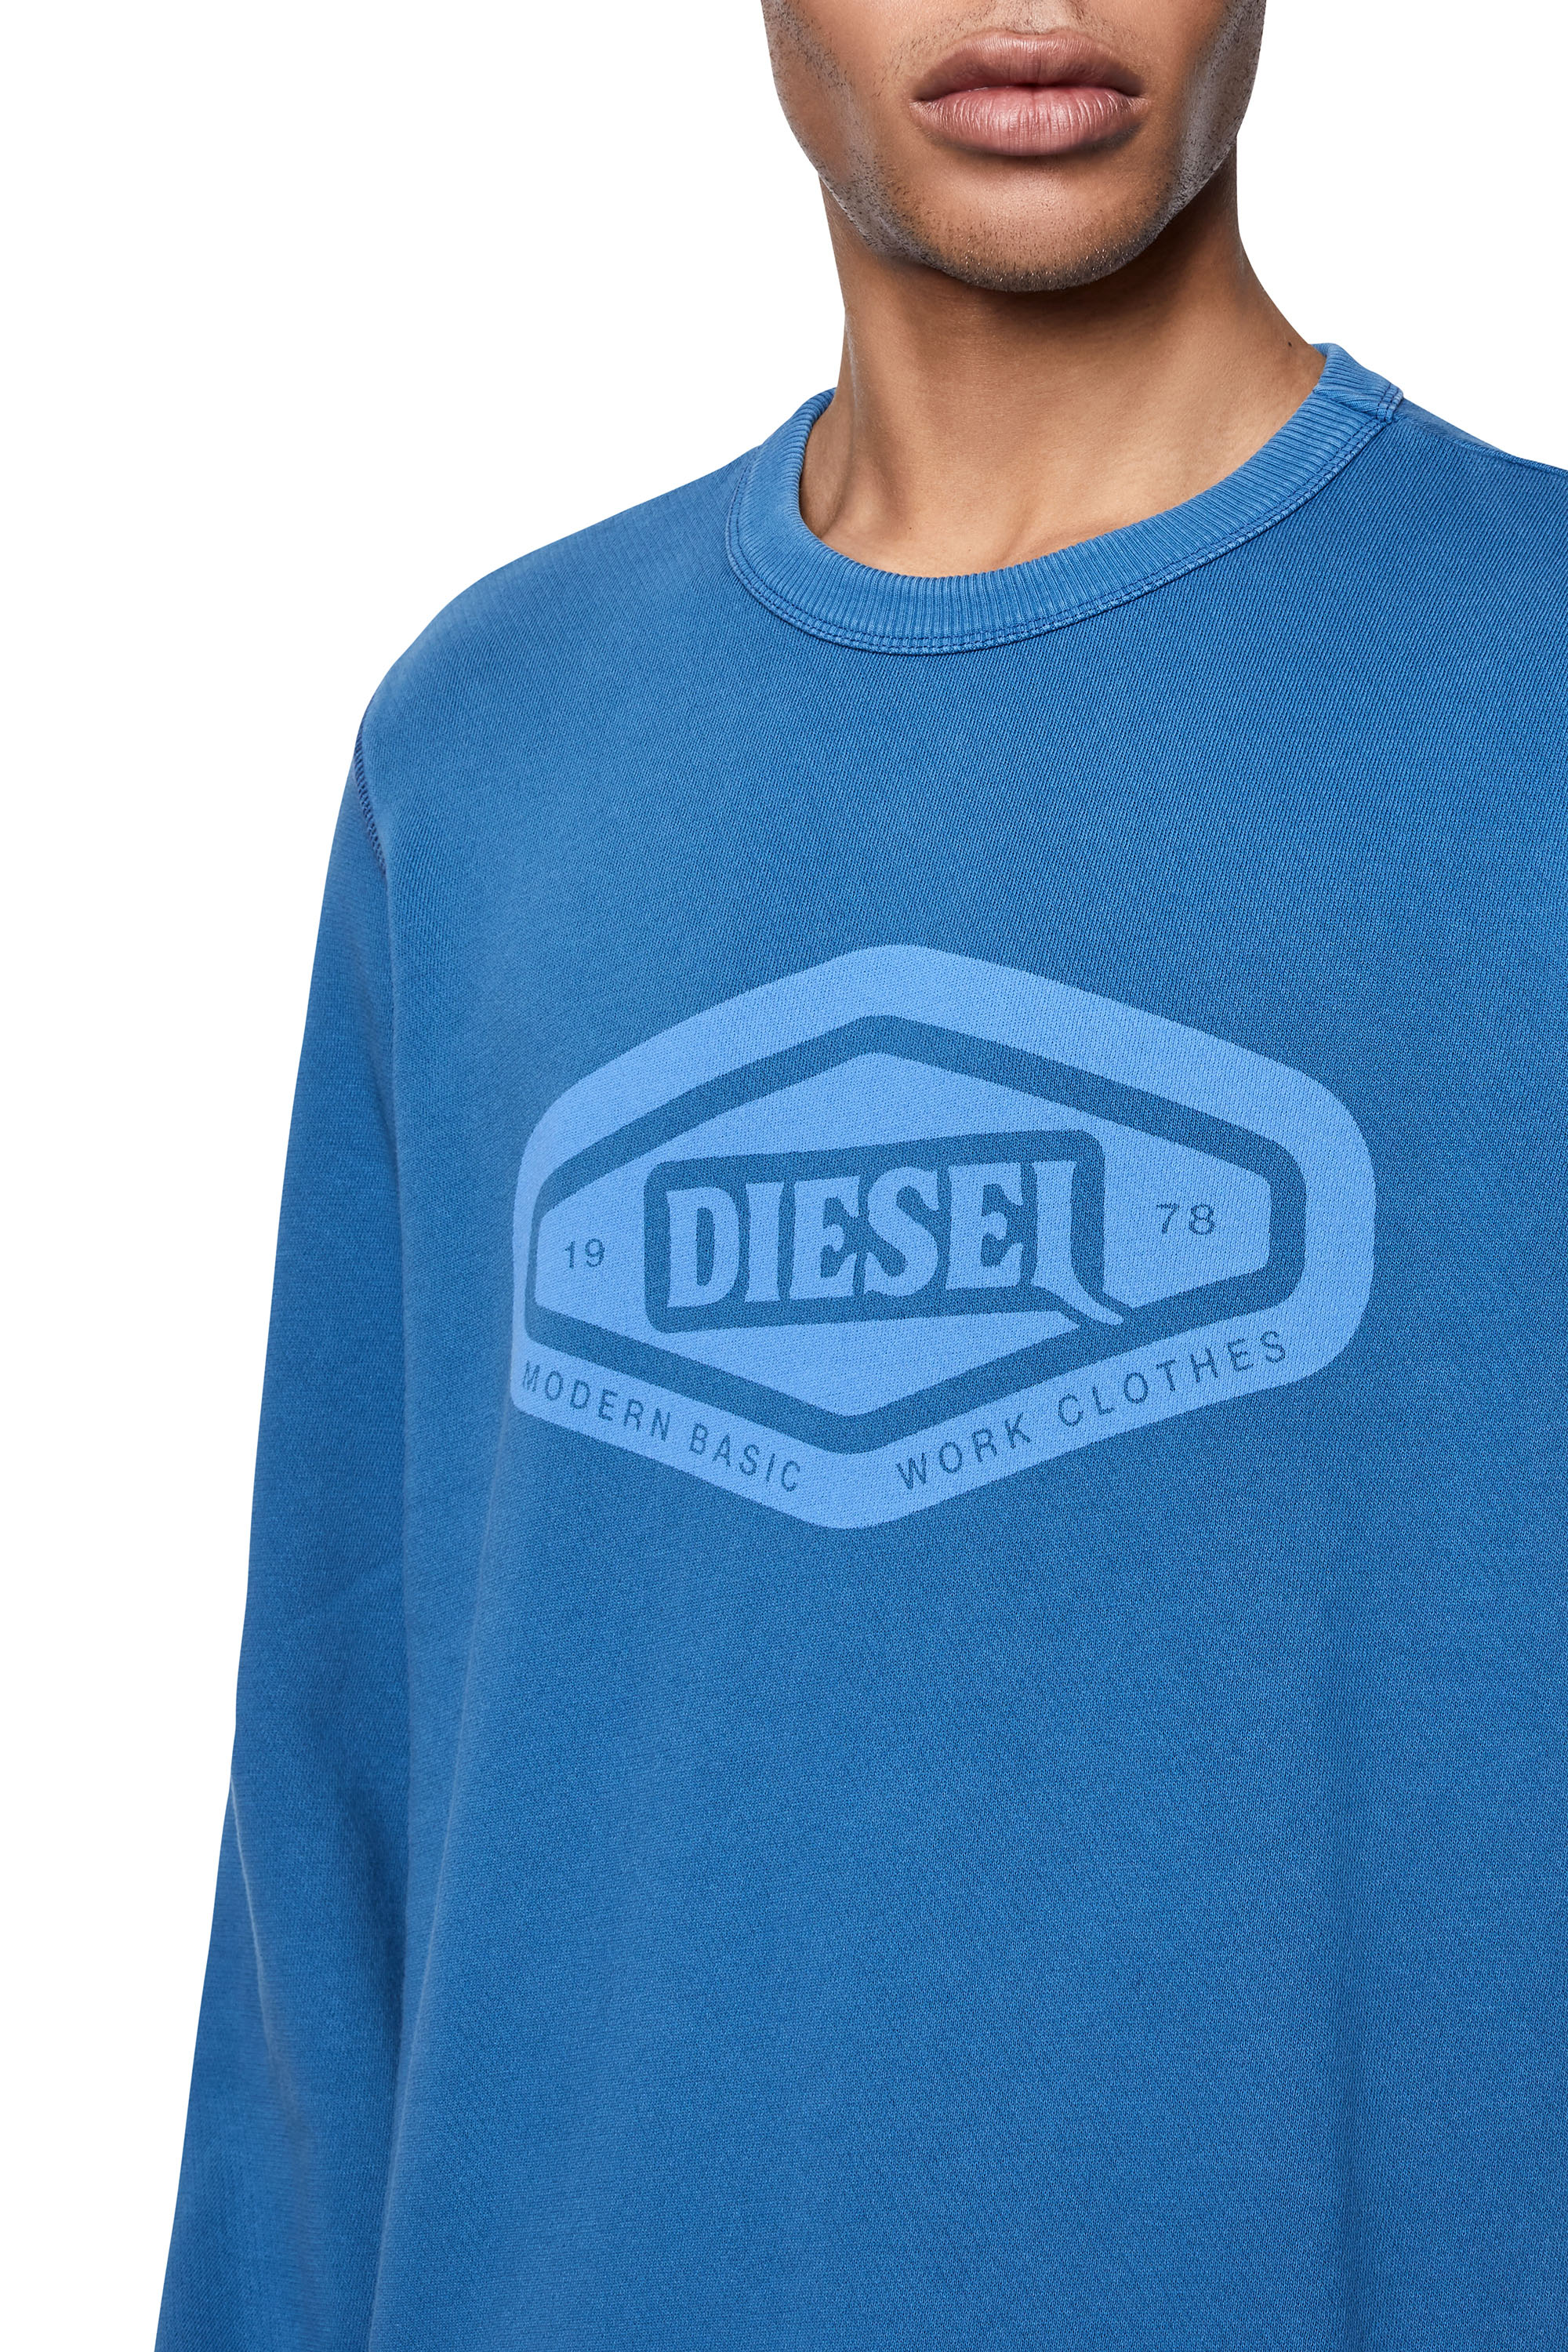 Diesel - S-GINN-D1, Blau - Image 4